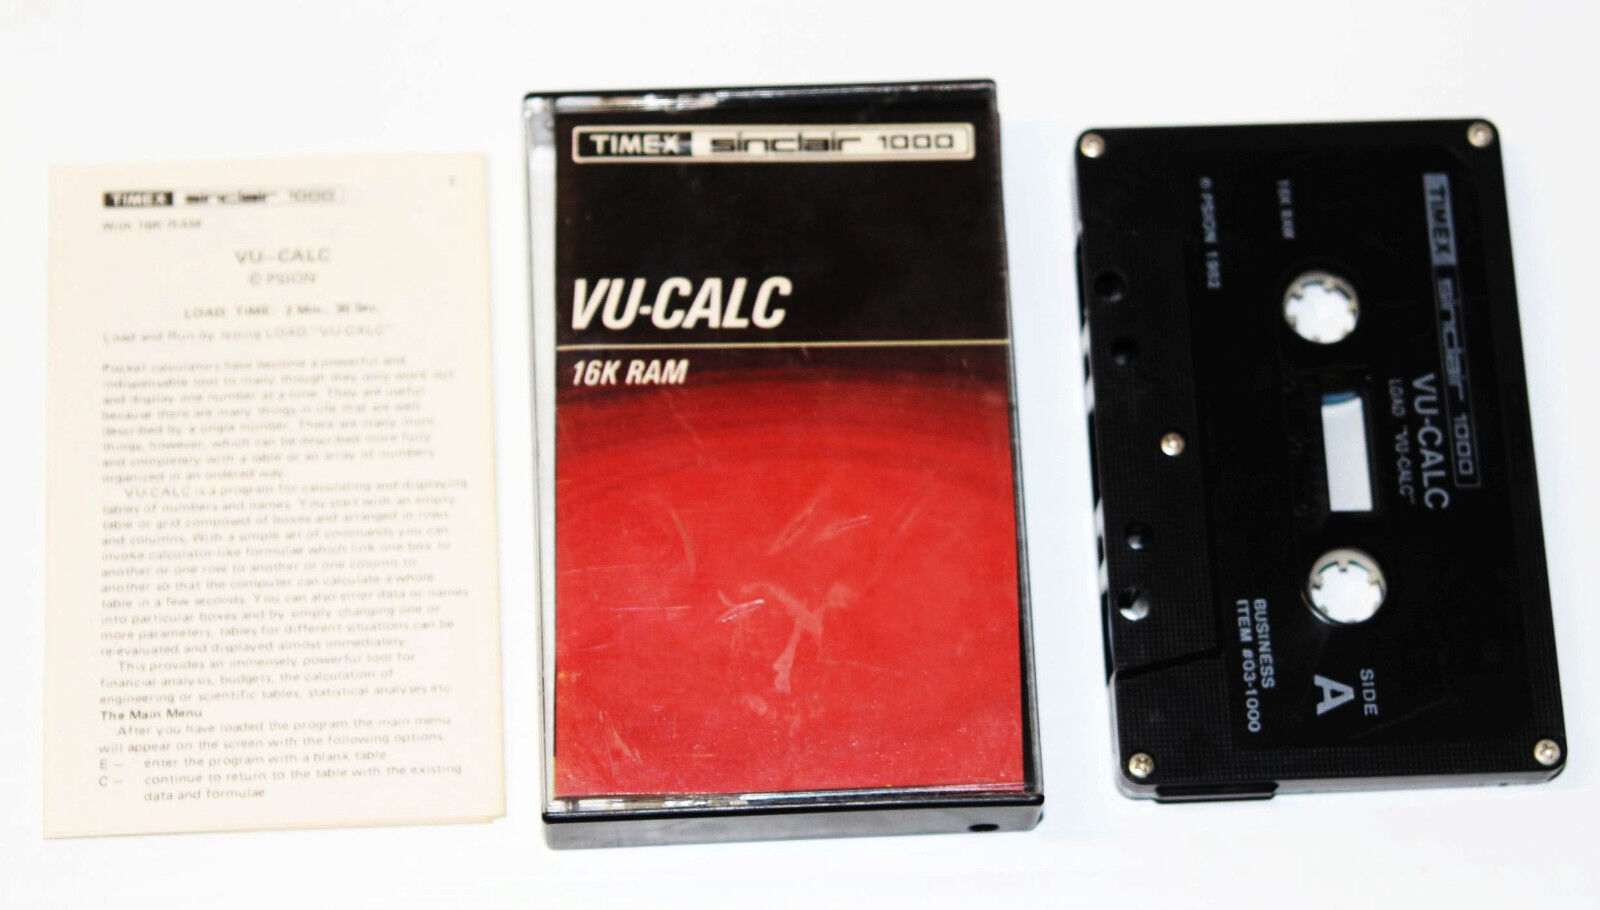 Vintage 1982 Timex Sinclair 1000 Computer VU-CALC 16k Ram Expansion Cassette 